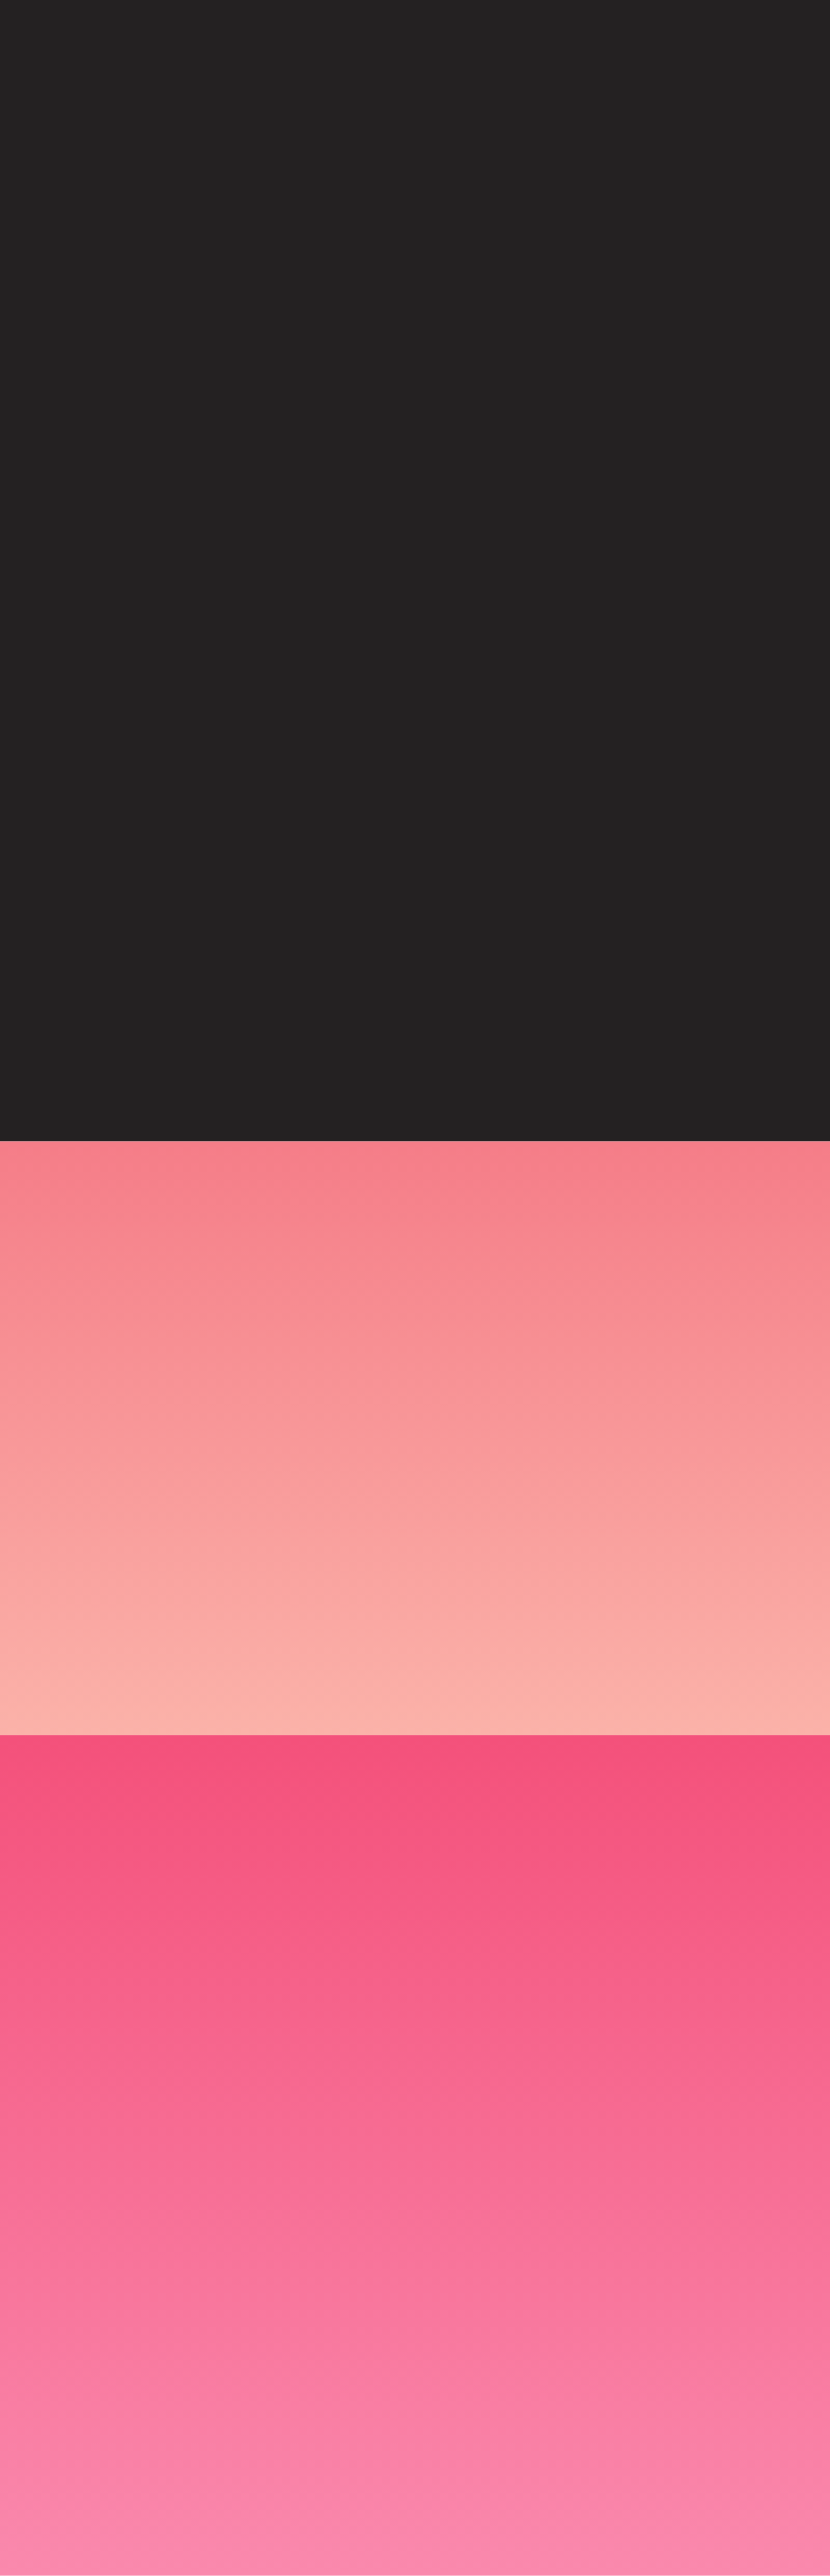 黒とピンクのグラデーション背景。ピンク色が下から上に向かって濃淡が変わり、上部は黒にフェードアウトしていくデザイン。